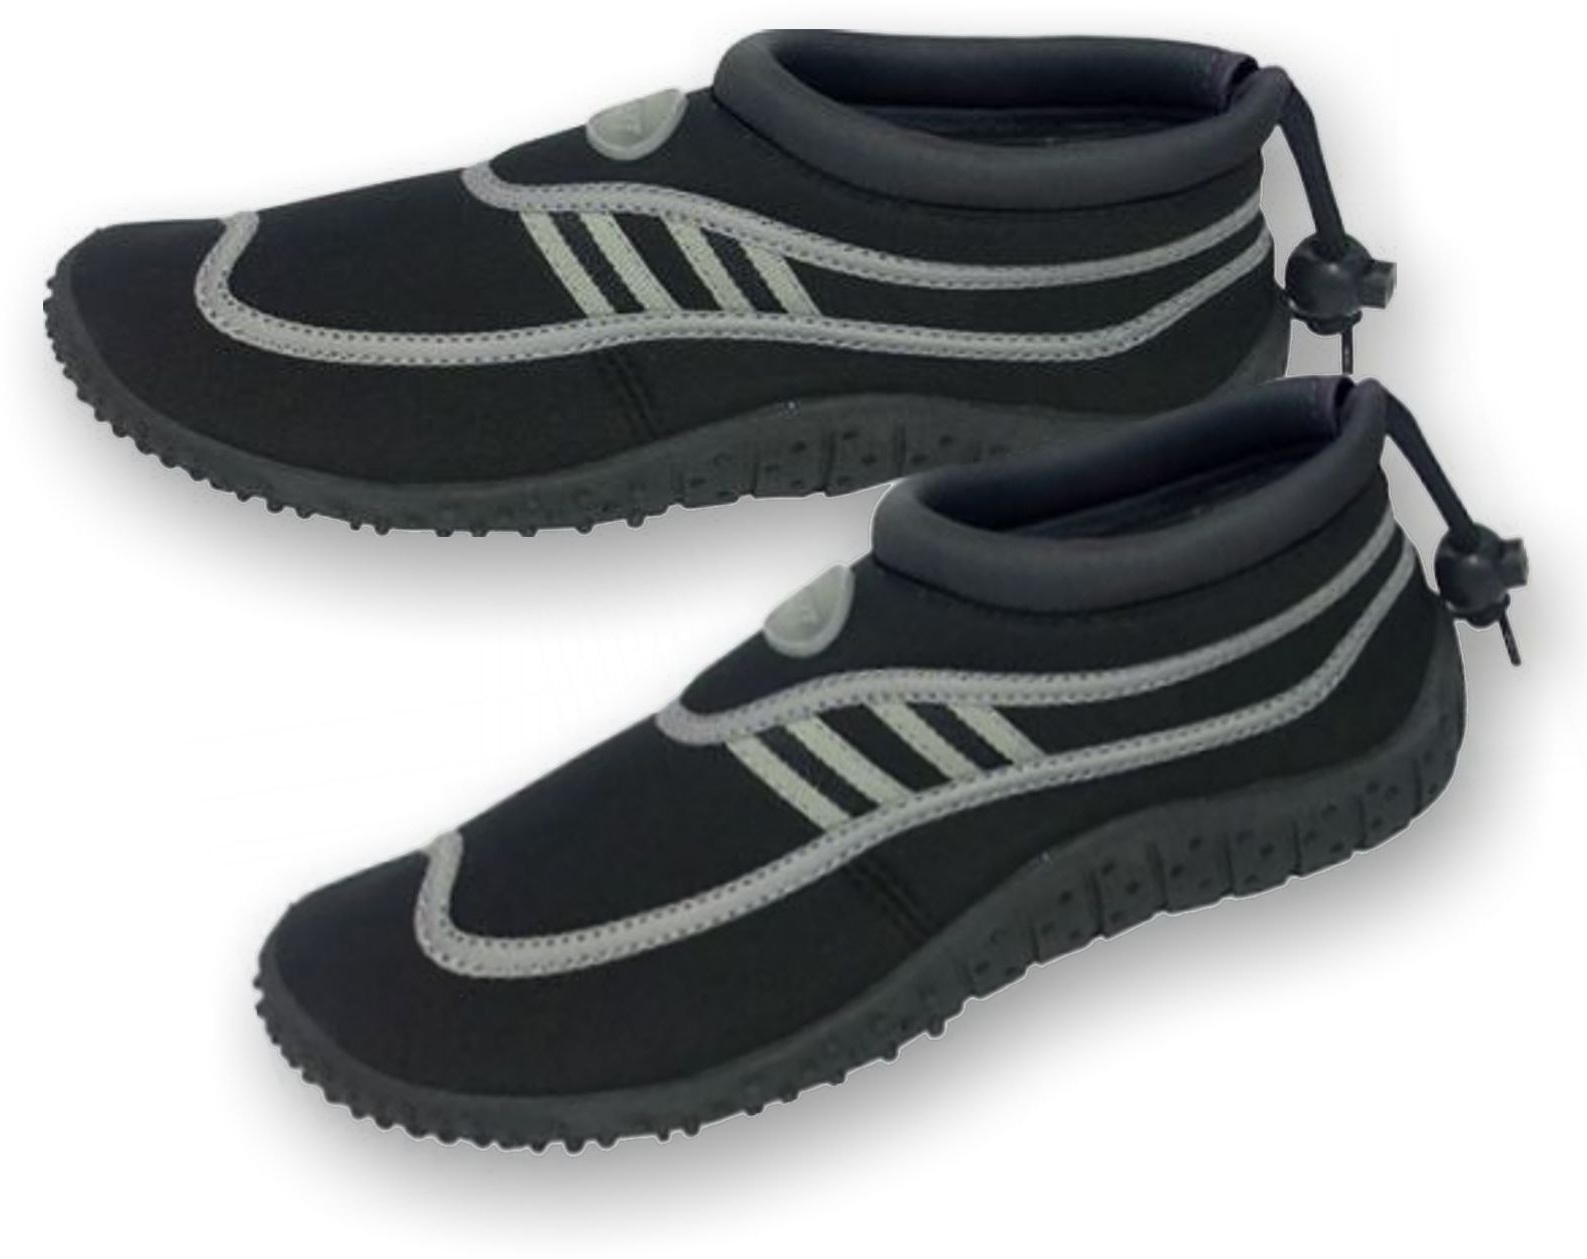 Swat Neopren Wassersport Schuhe schuh boot neopren neo wasser, Größe in EU: 37